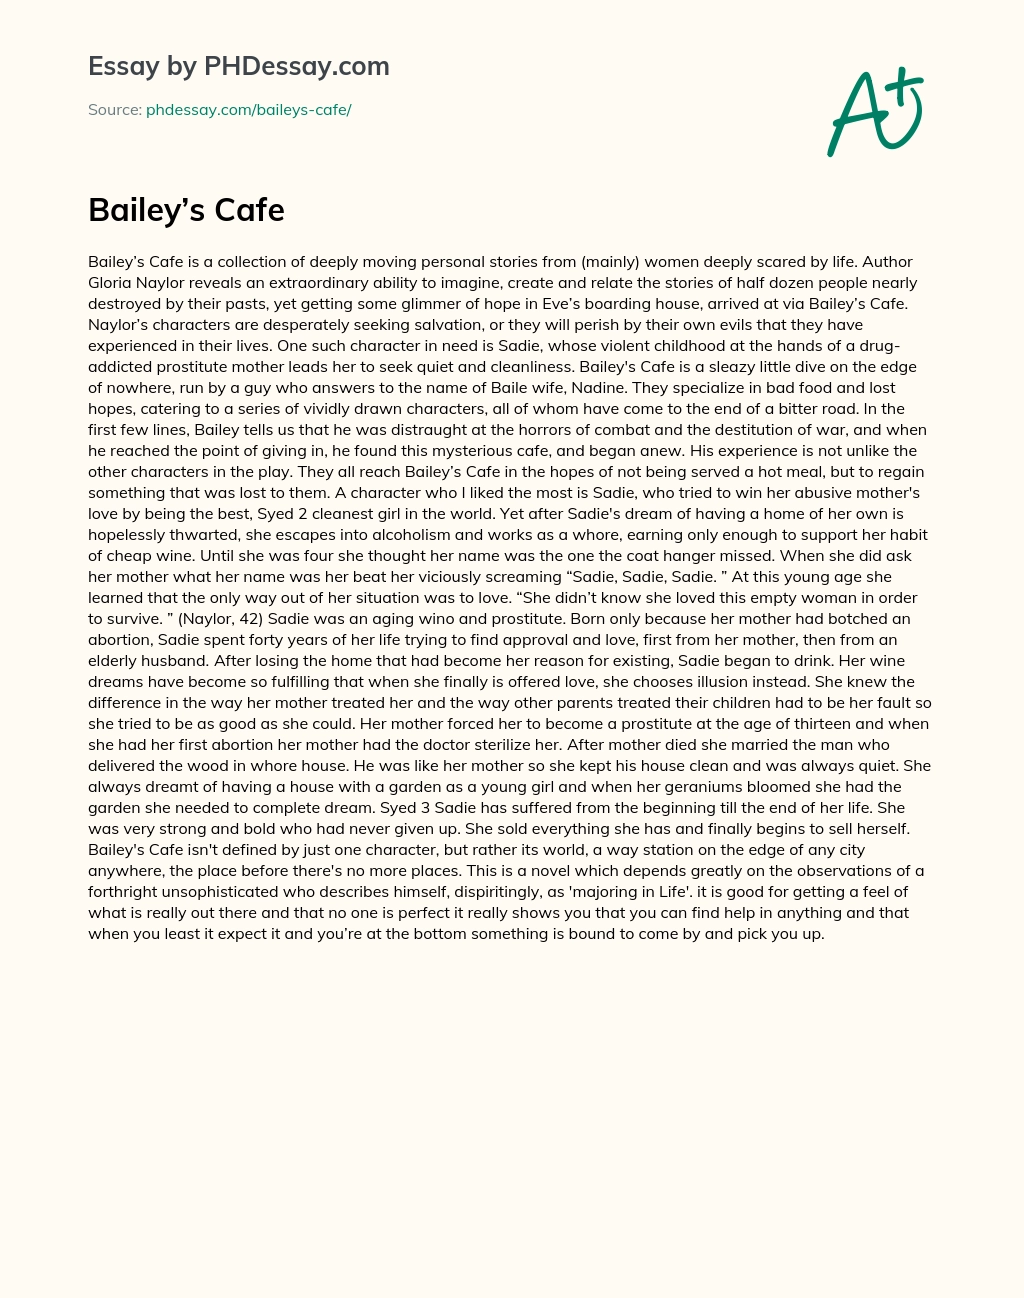 Bailey’s Cafe essay